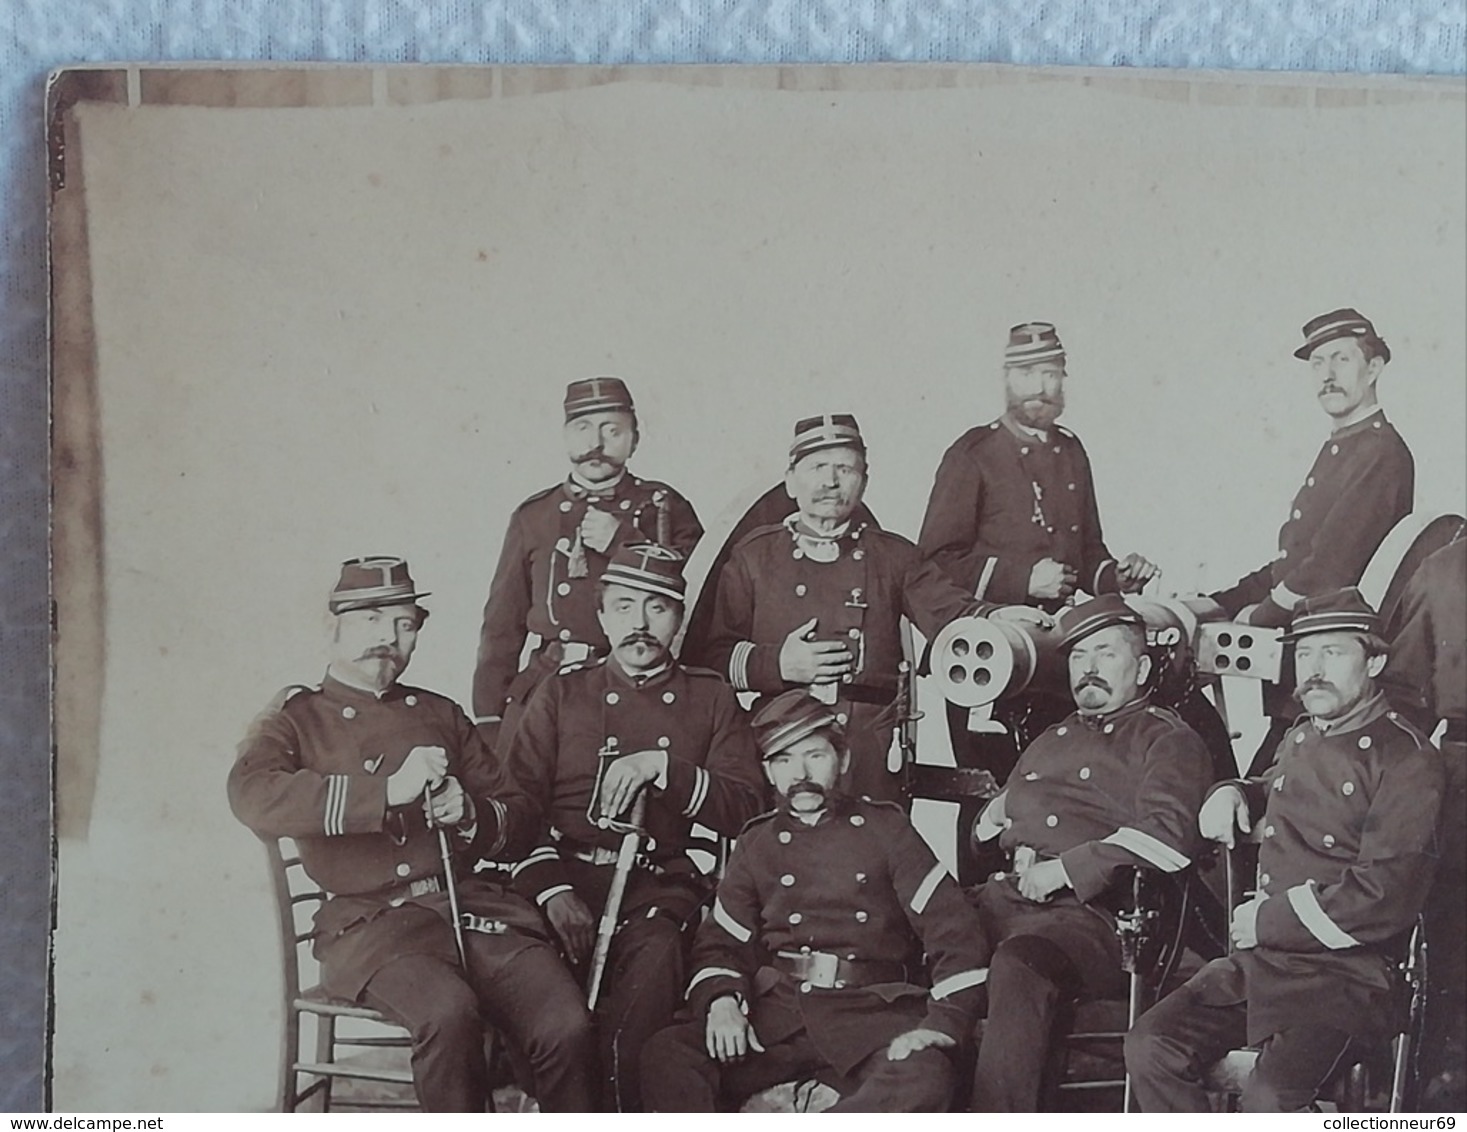 Ancienne photo originale Militaire groupe de Soldats devant un canon GARDE NATIONALE 1870-1871 du XIXème